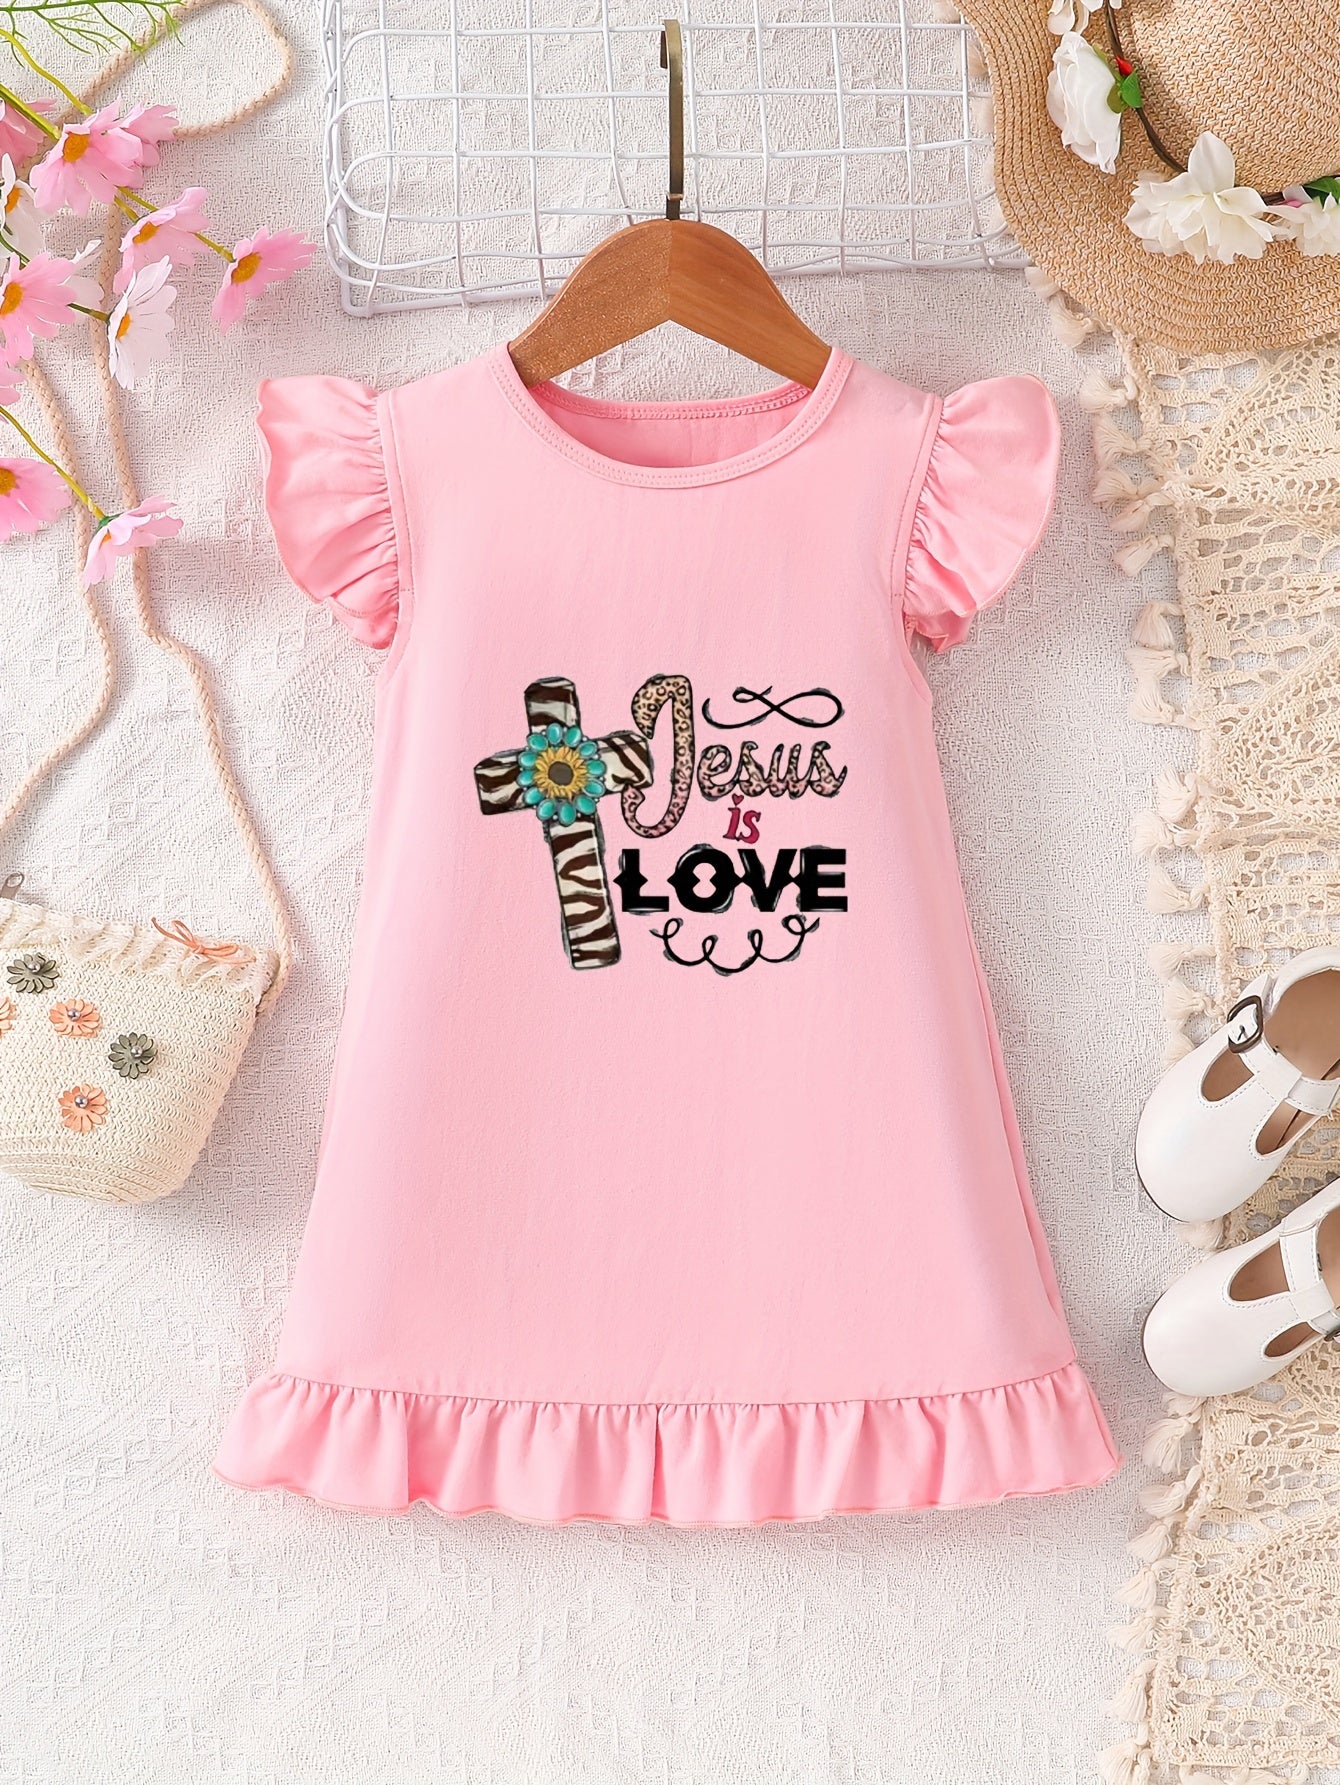 Jesus Is Love Christian Toddler Dress claimedbygoddesigns